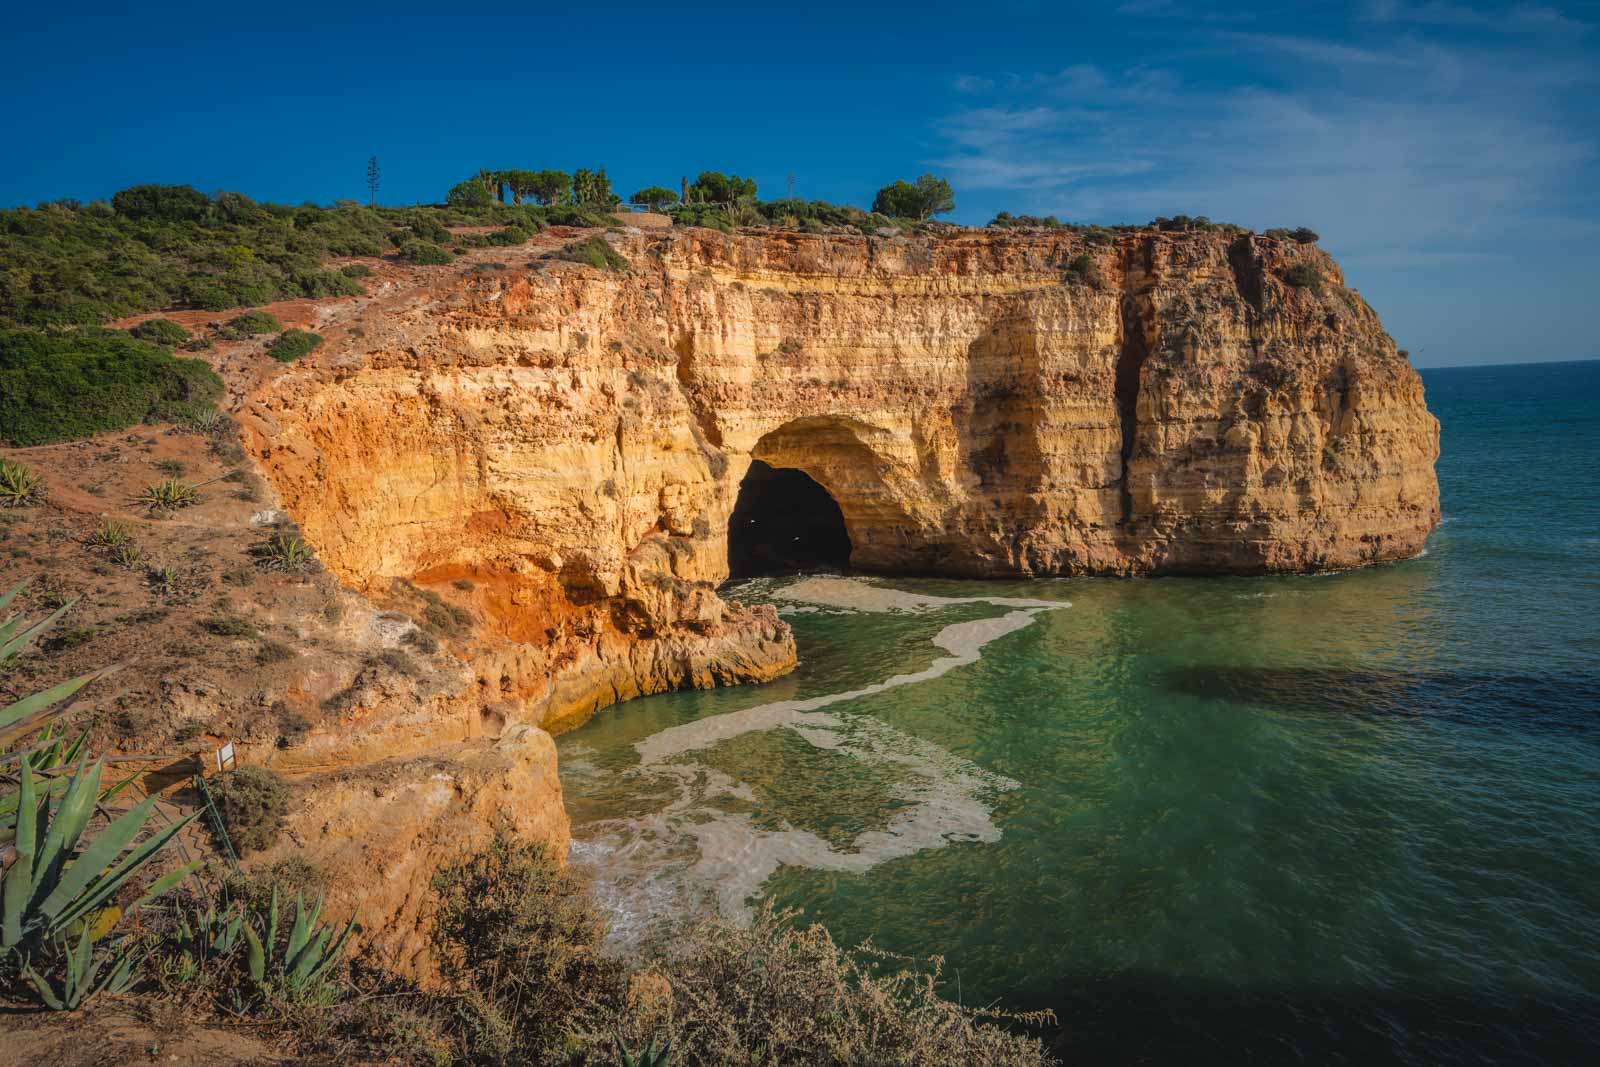 Where to stay in Algarve Coastline